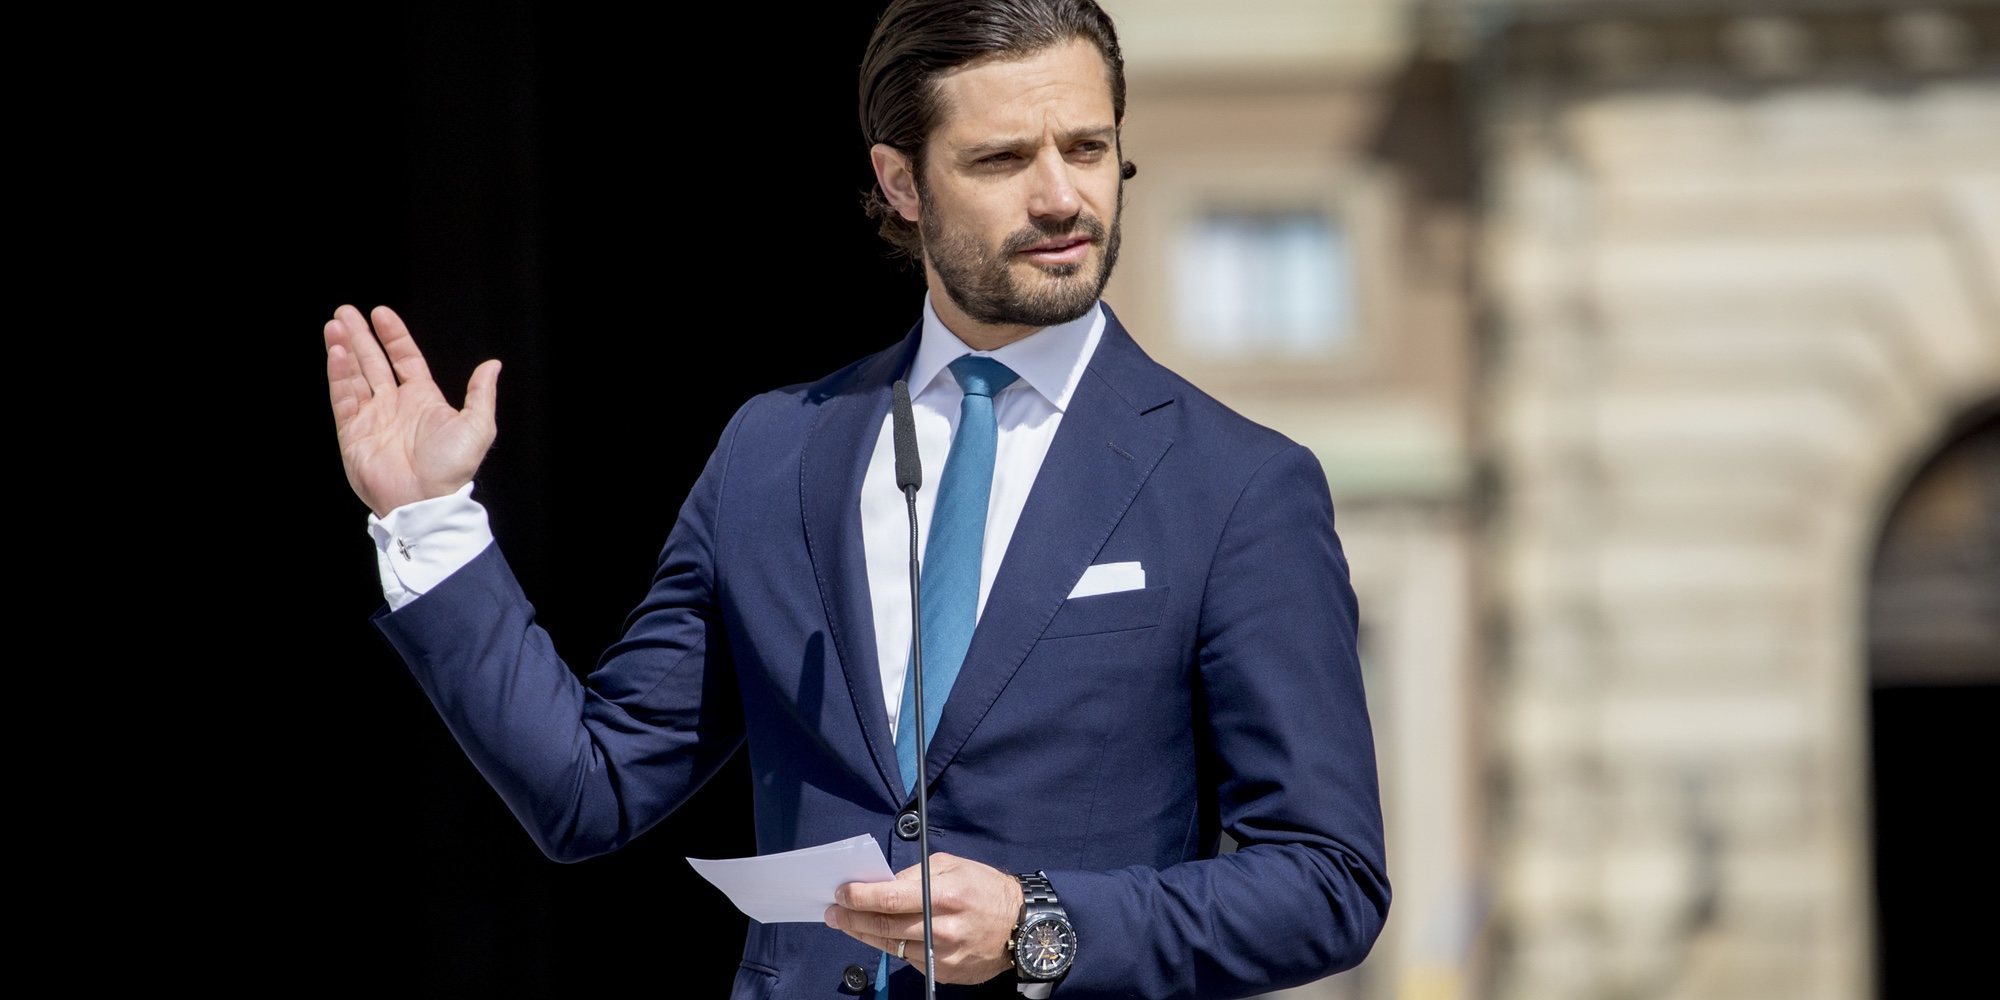 Wiveka Thott habla sobre el Príncipe Carlos Felipe de Suecia: "Fue mi primer amor"